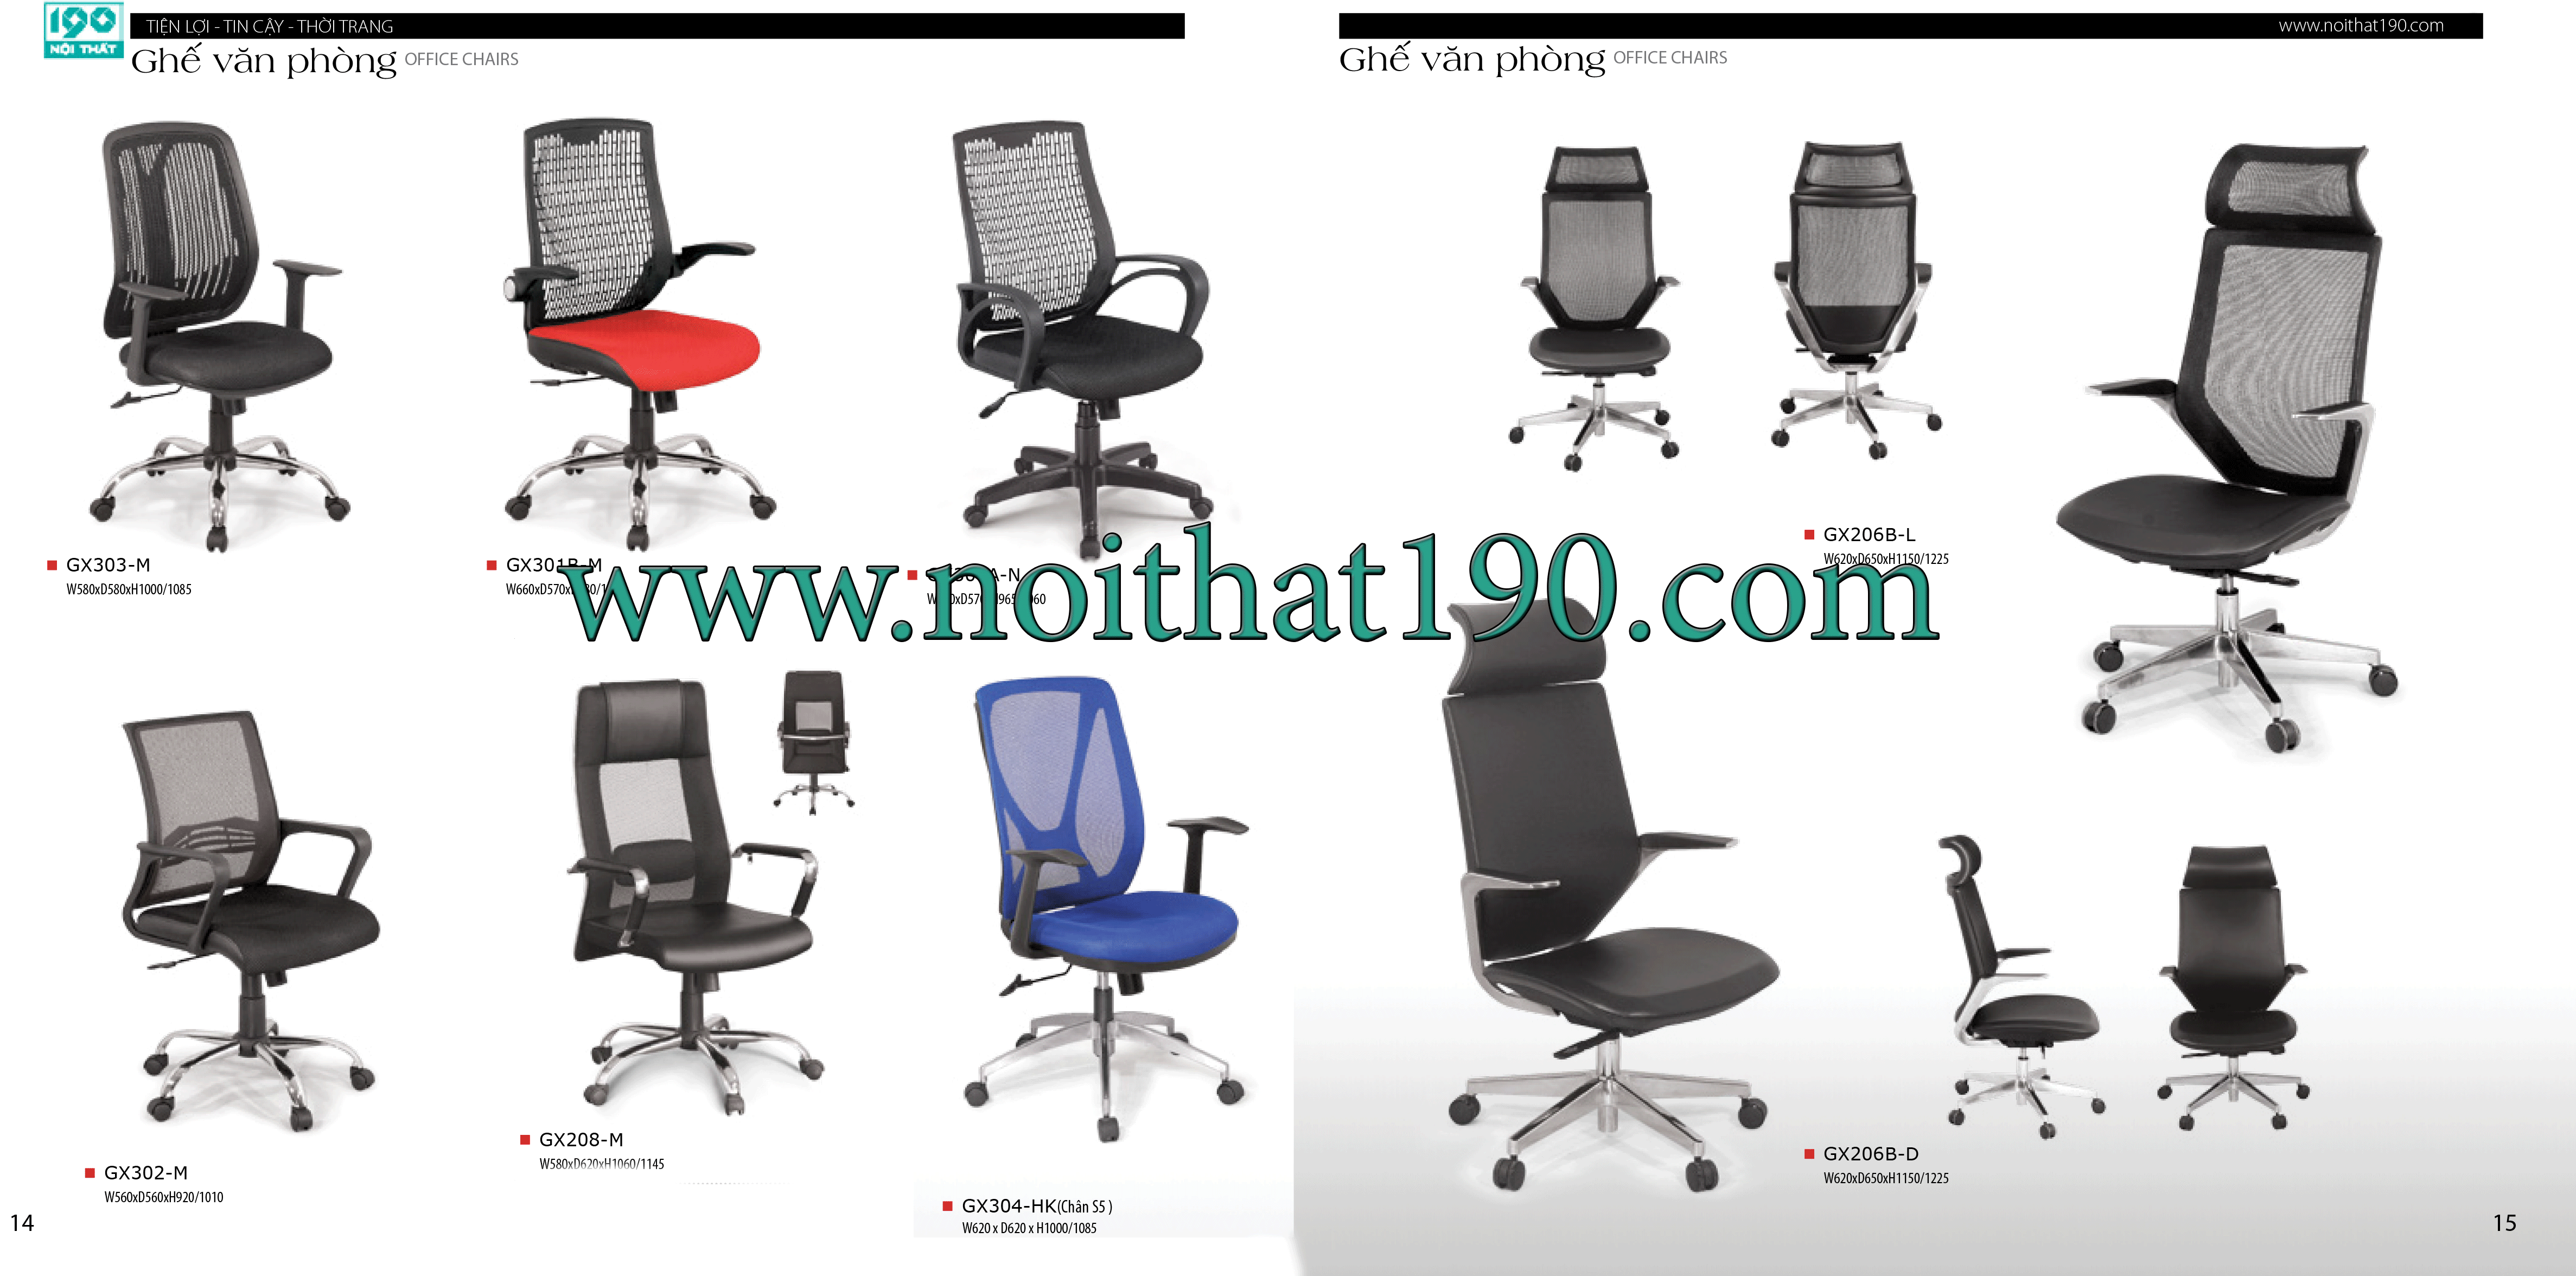 Bật mí những mẫu ghế văn phòng 190 đầy hiện đại (P.1)